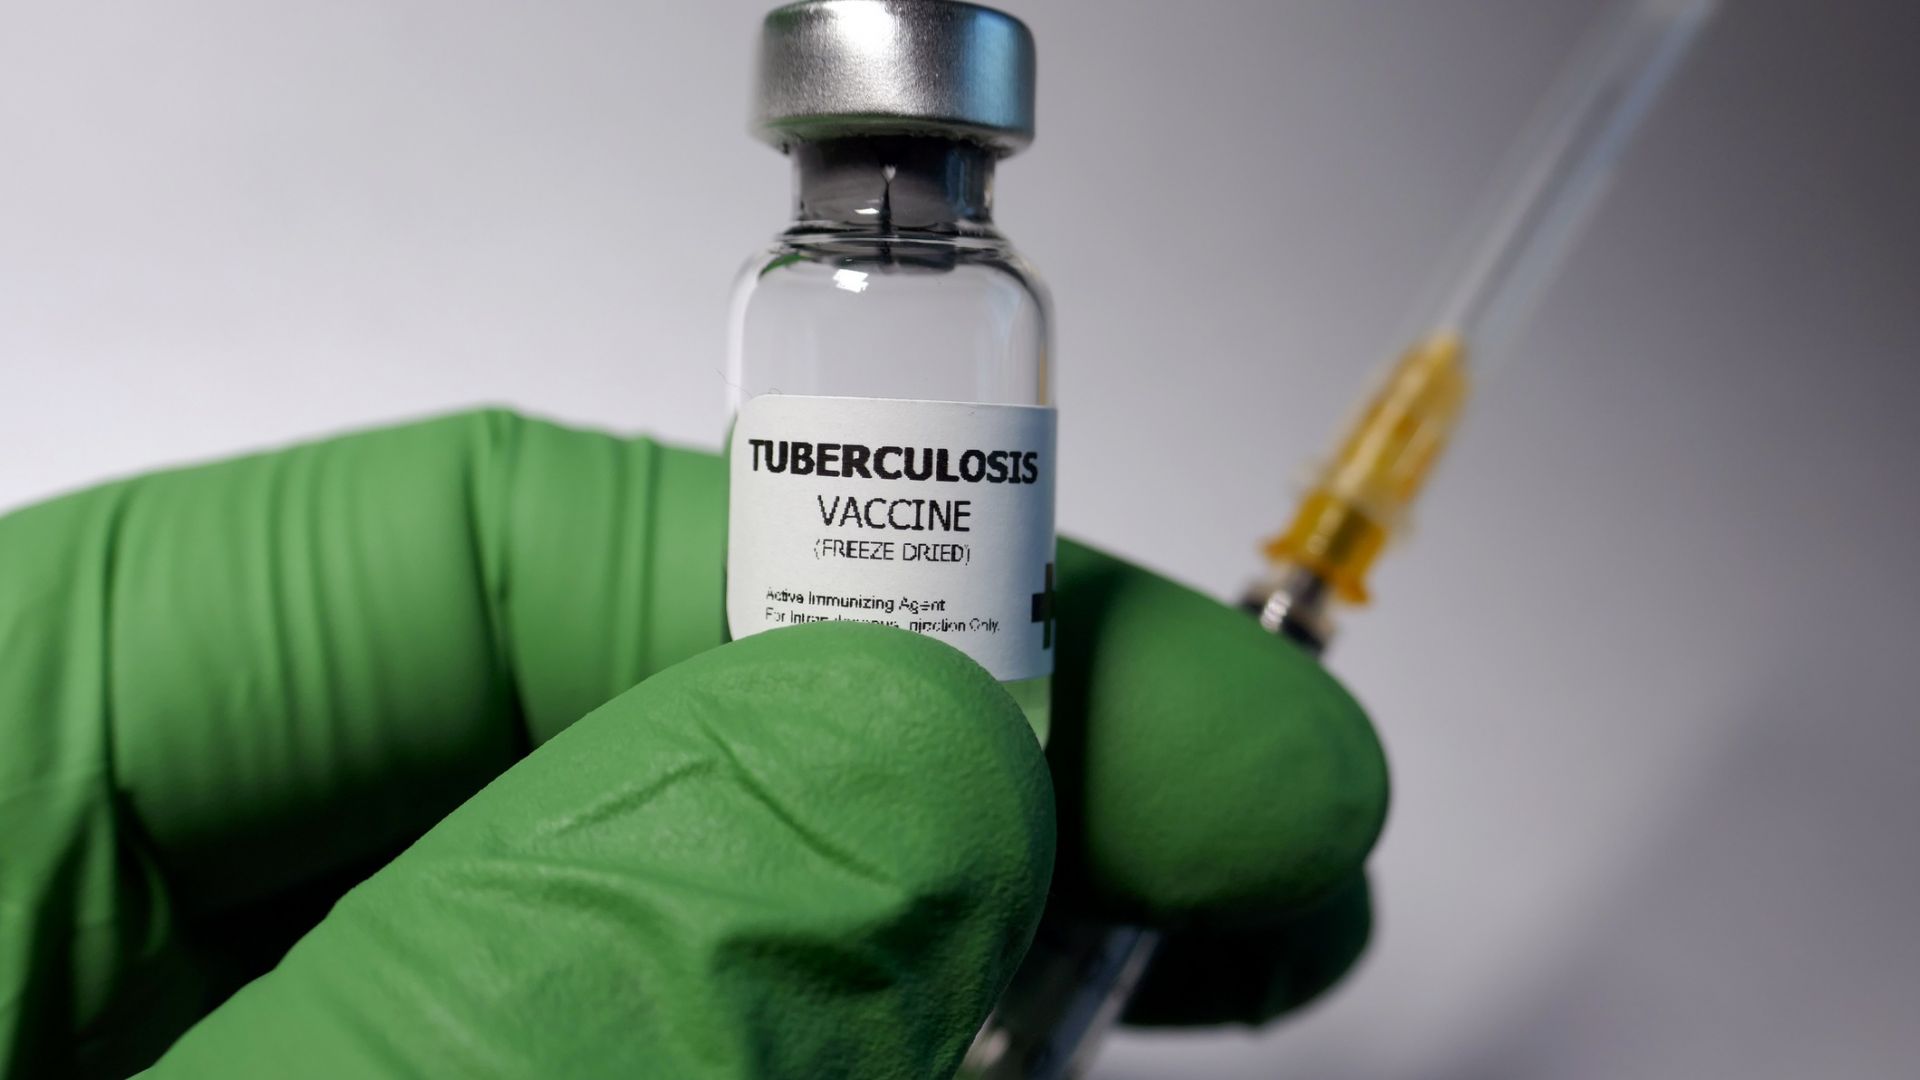 Австралийски медици ще започнат тестове с ваксина срещу туберкулоза в